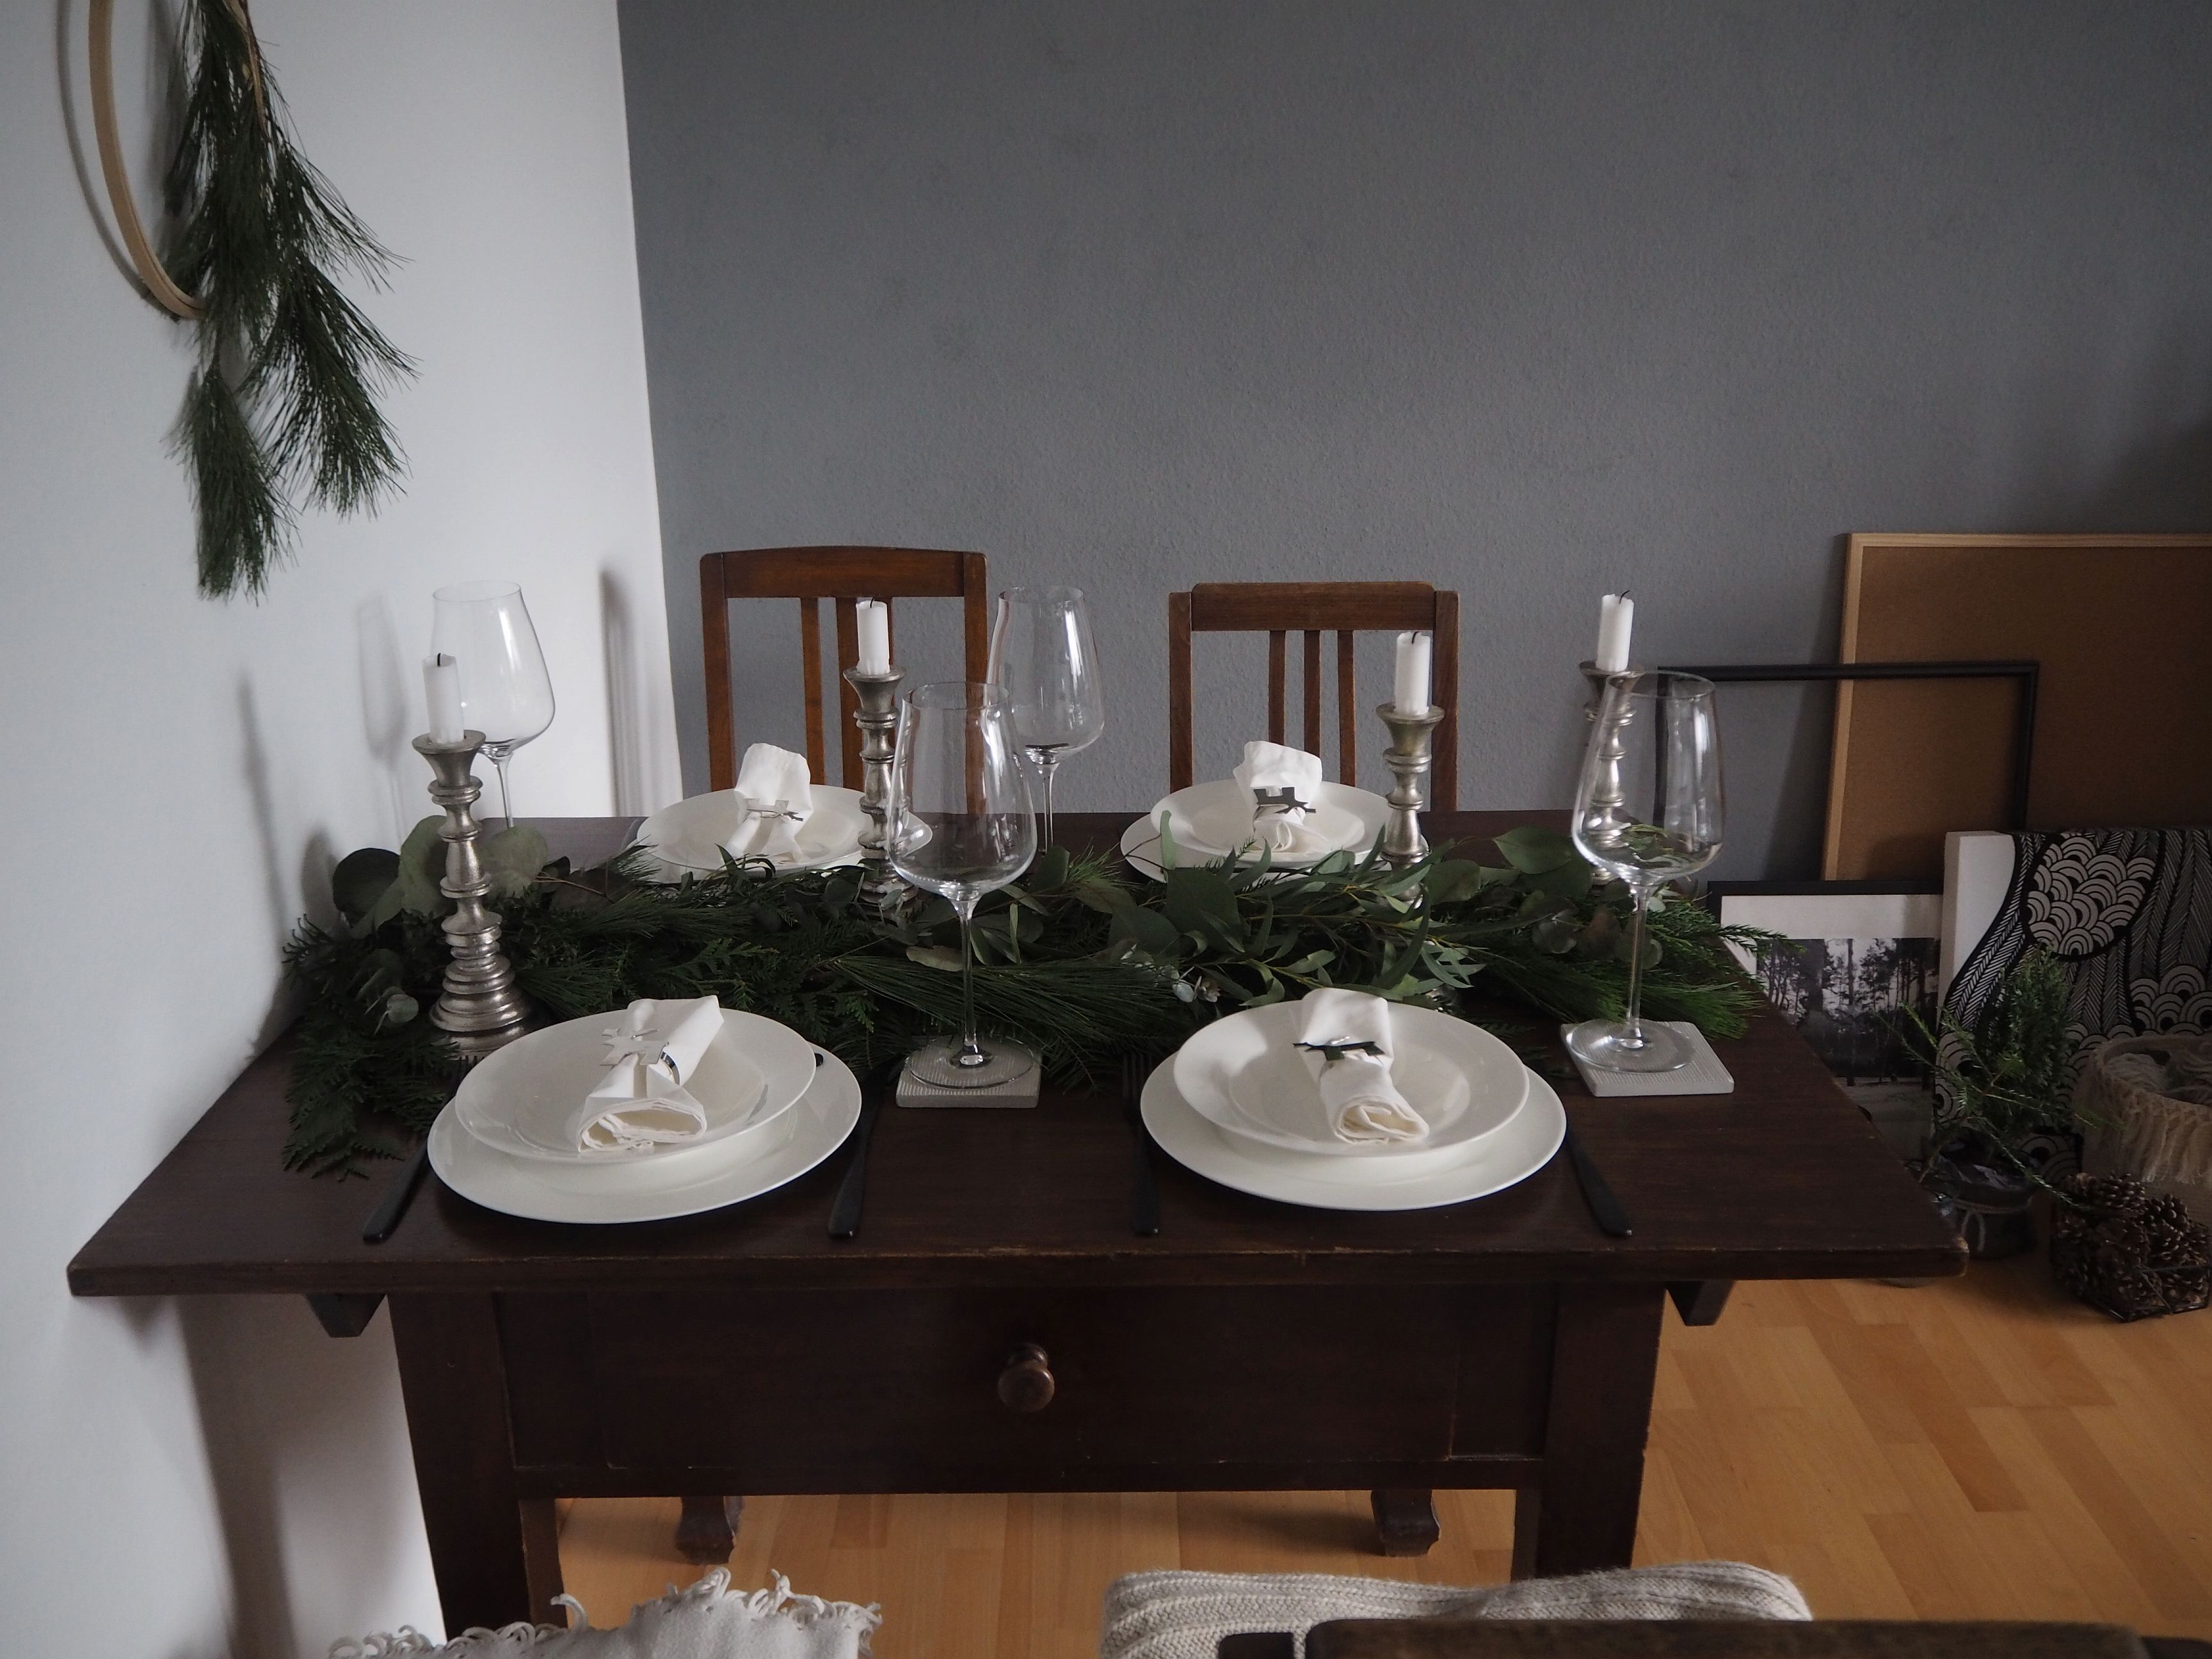 2017-12-skoen-och-kreativ-tischdeko-interior-schlichtes-skandinavisches-tablesetting-weihnachten (3